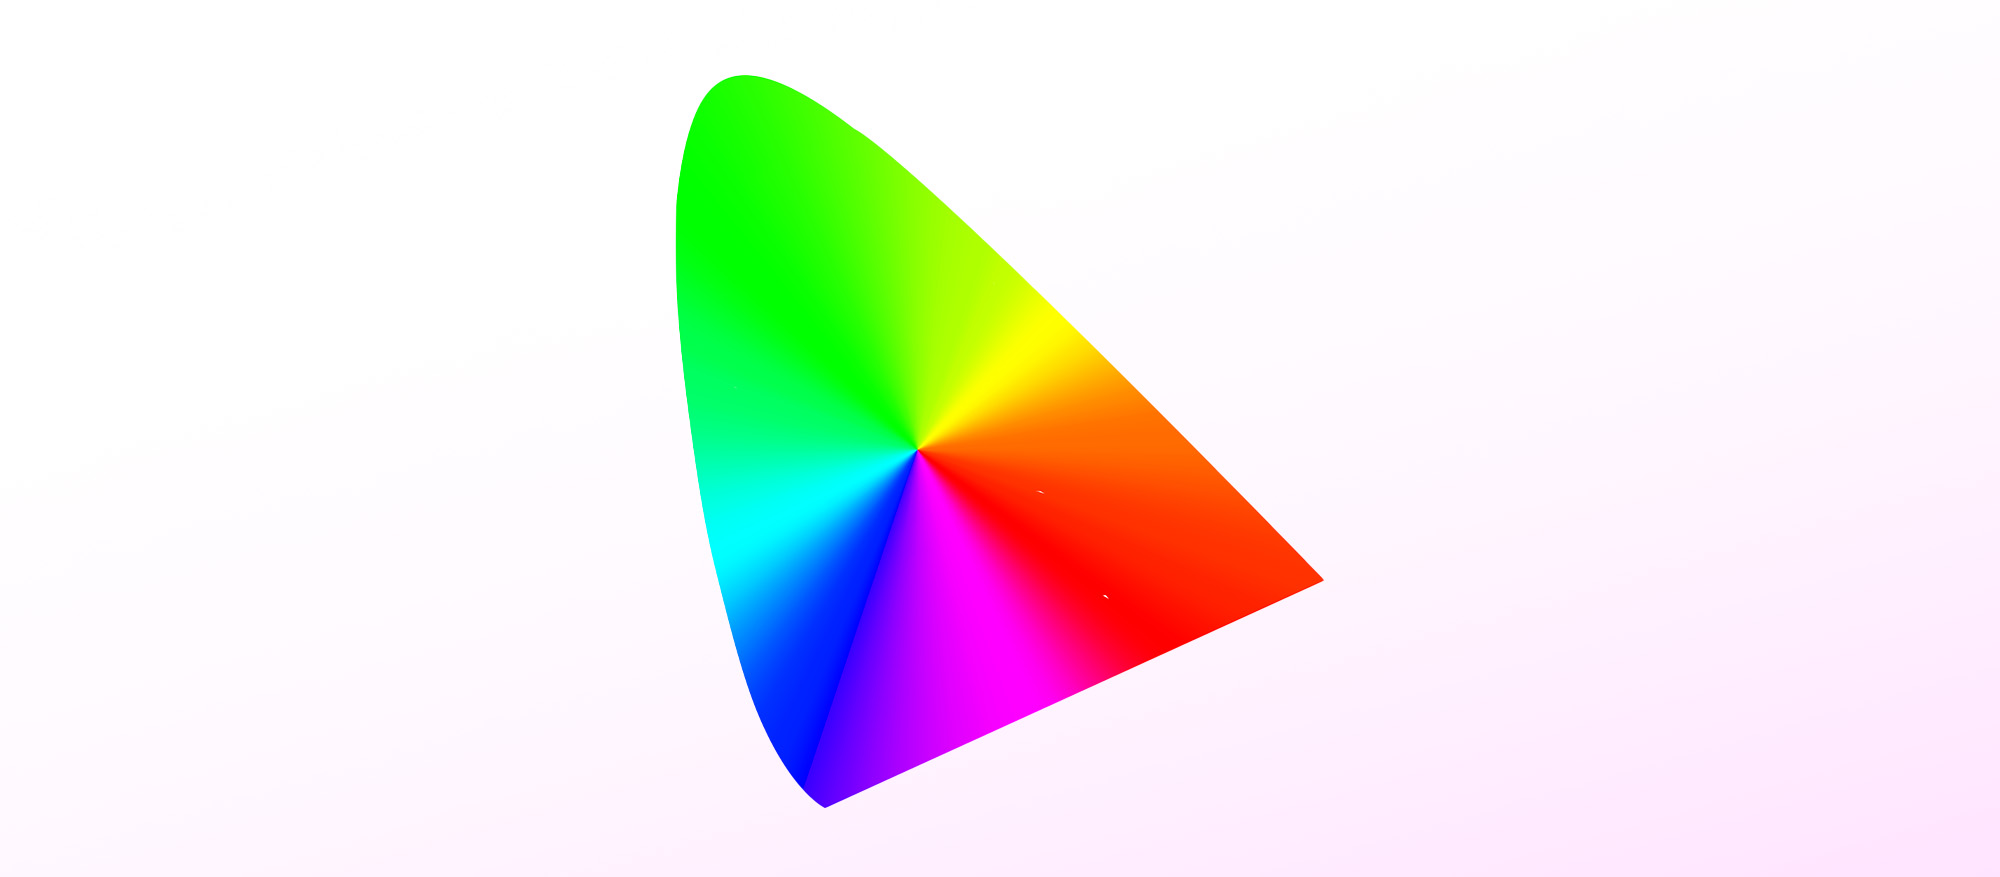 O ícone dos perfis ICC baseia-se no diagrama de cromaticidade padrão CIE e serve de ponto de projeção para os espaços de cor RGB.